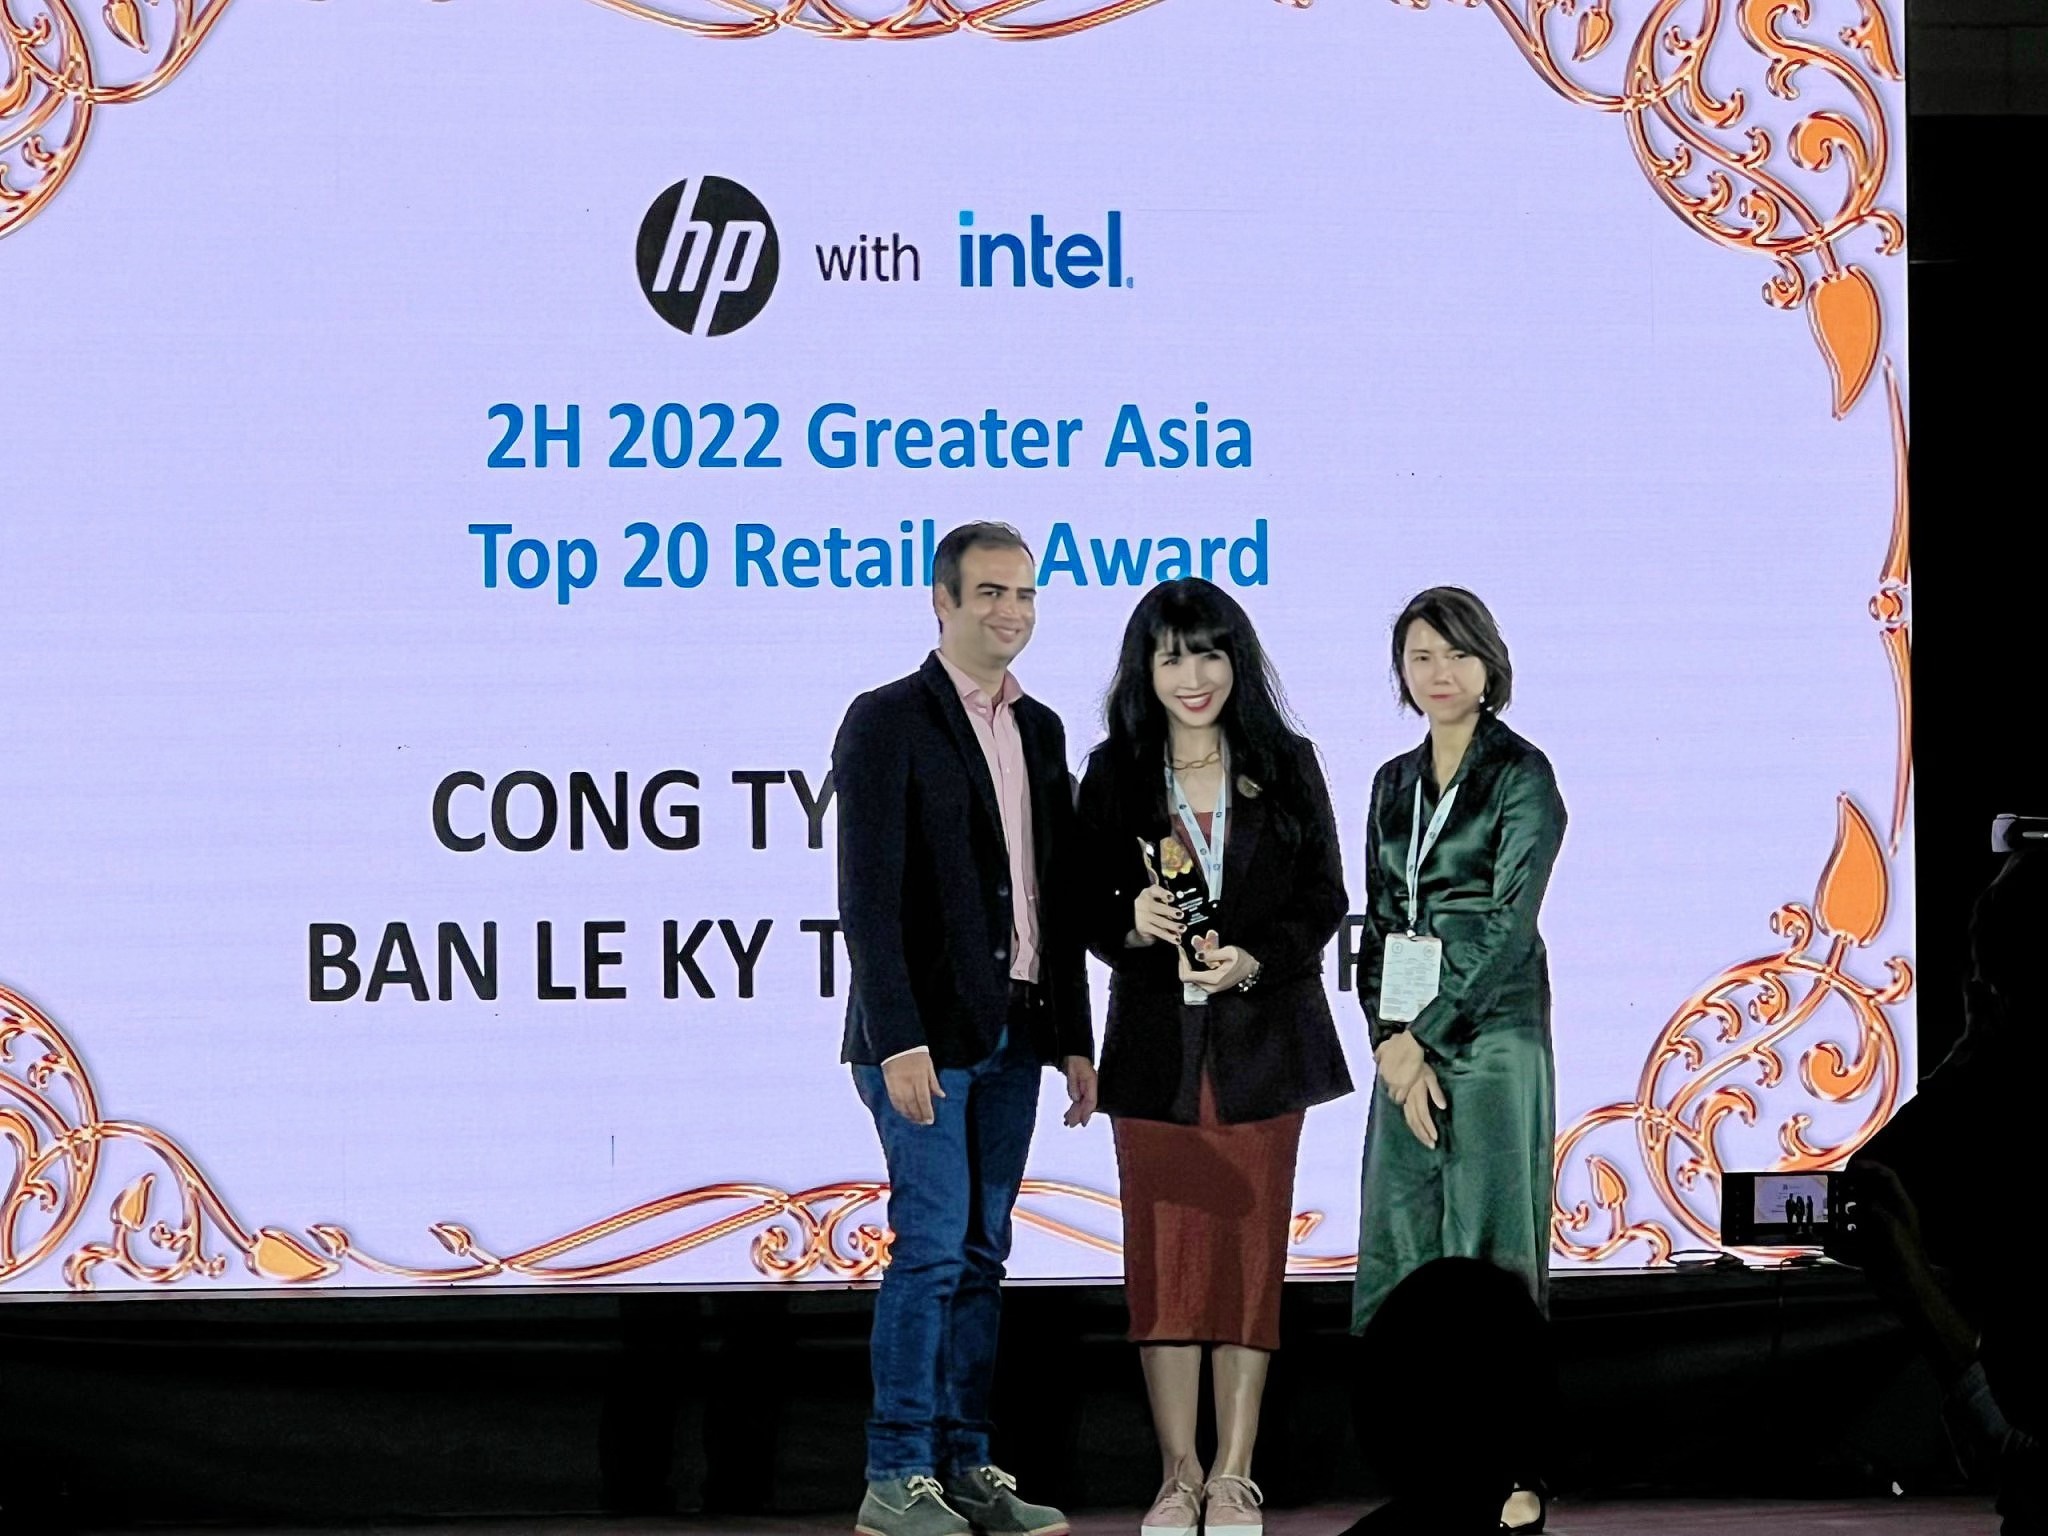 FPT Shop vào top 20 nhà bán lẻ xuất sắc châu Á của HP - Intel - ảnh 1